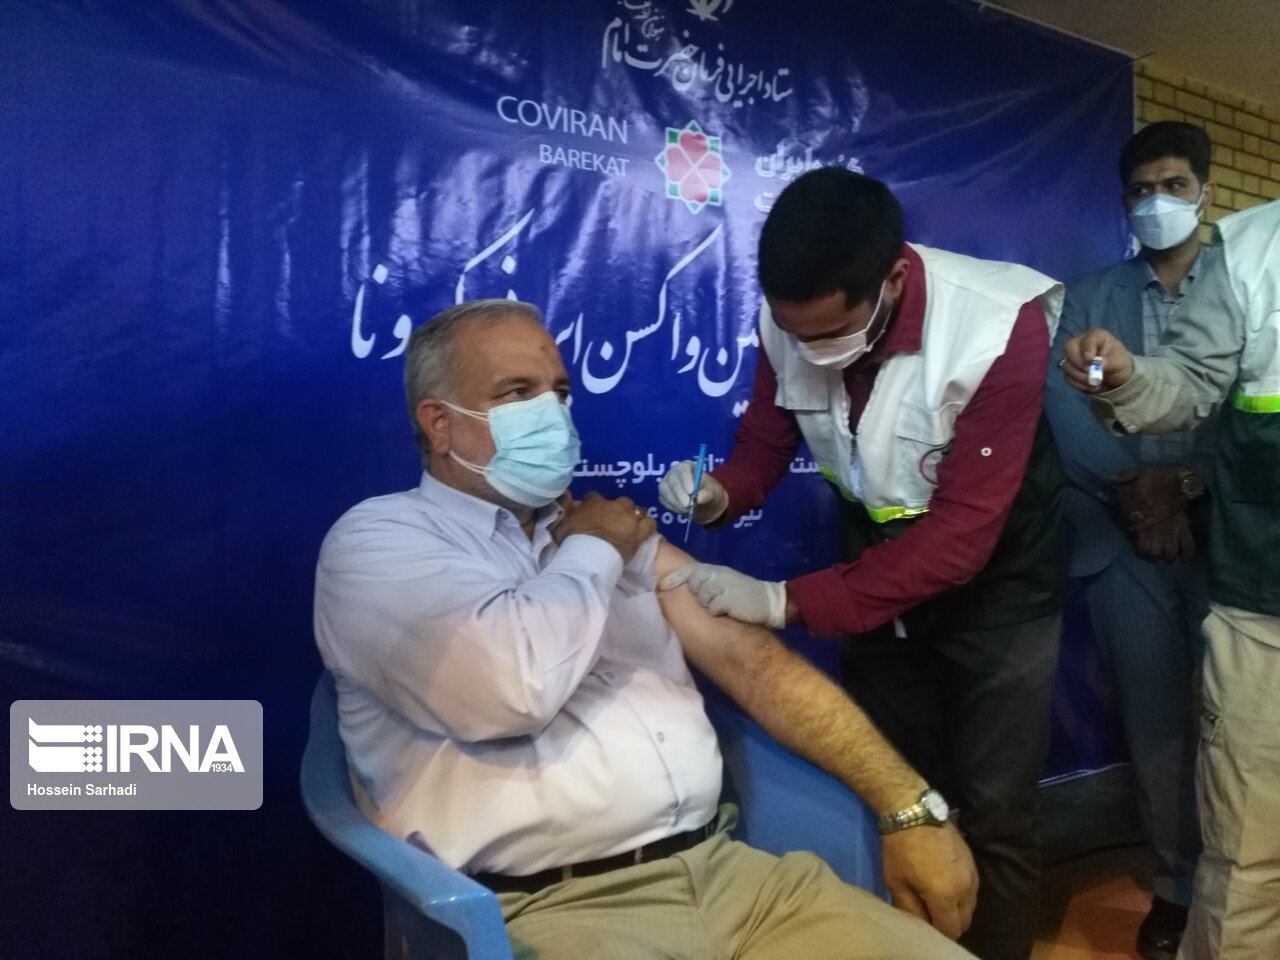 واکسیناسیون؛ مرهم روزهای کرونایی سیستان و بلوچستان